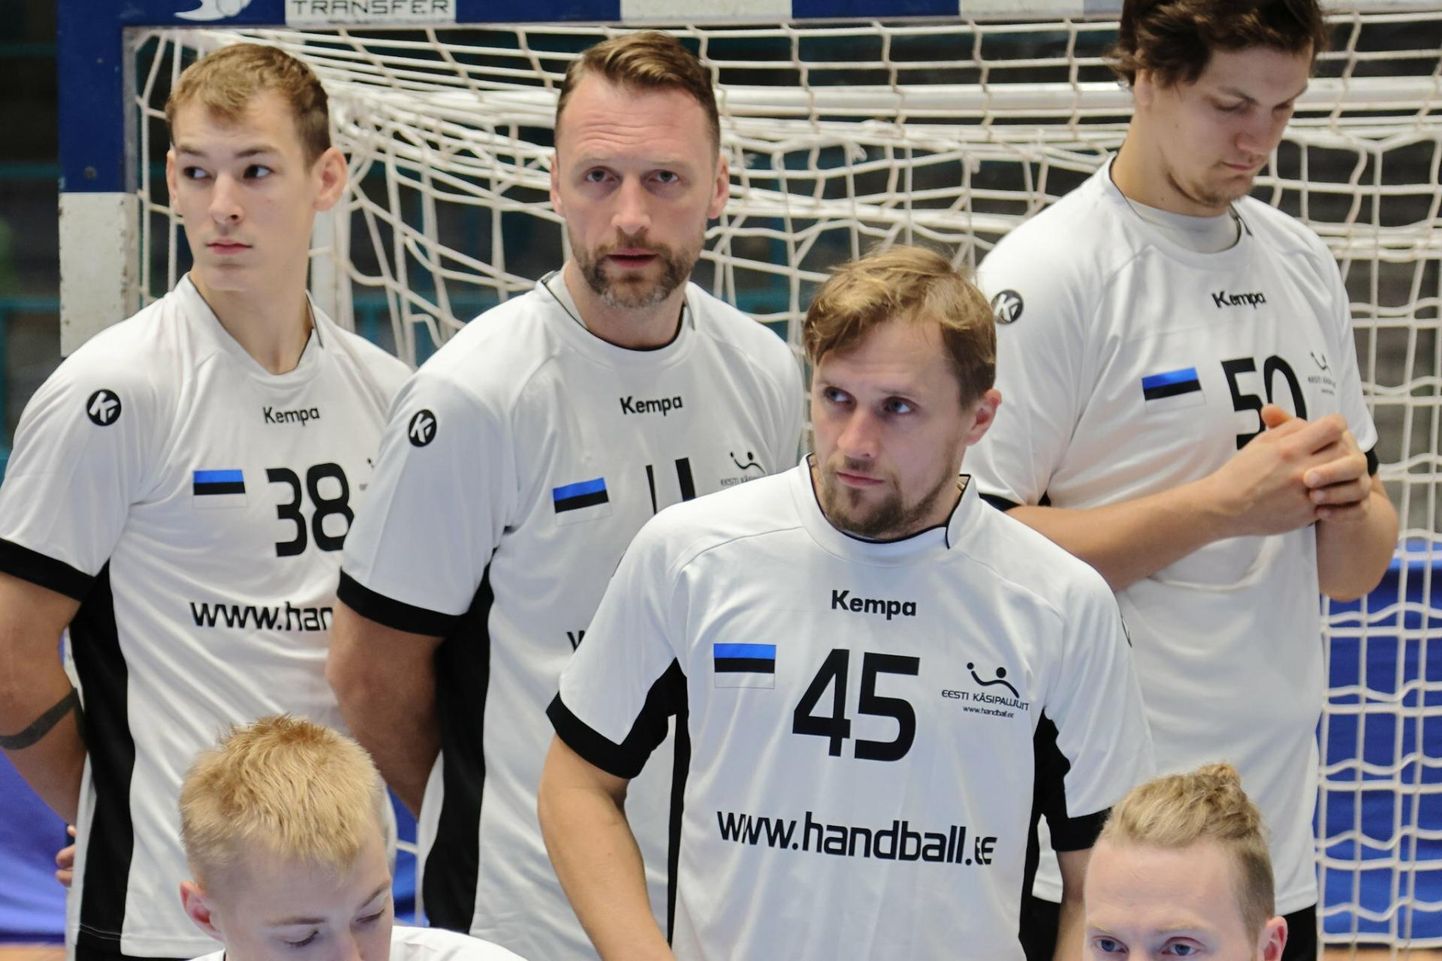 Täna läheb Eesti käsipallikoondis 2024. aasta Euroopa meistrivõistluste valikturniiri esimeses mängus vastamisi Tšehhiga. Koondise koosseisu kuulub viis Viljandi käsipallikasvandikku, teiste hulgas pildil olev Ott Varik (nr 45).